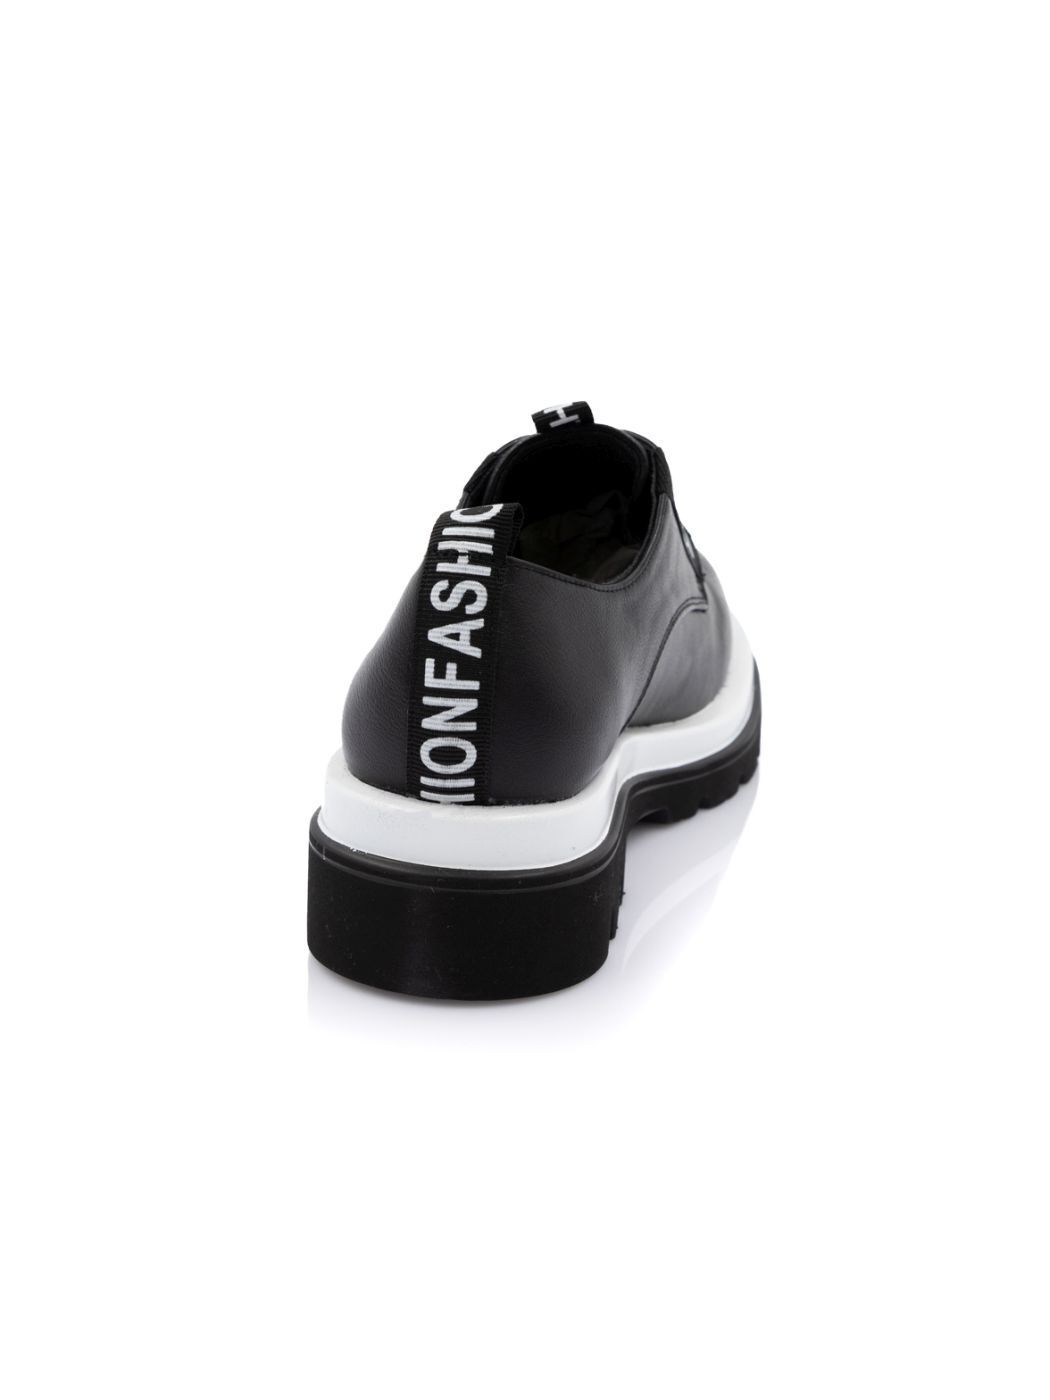 Туфли Oxfords женские черные экокожа демисезон от производителя 1M вид 1